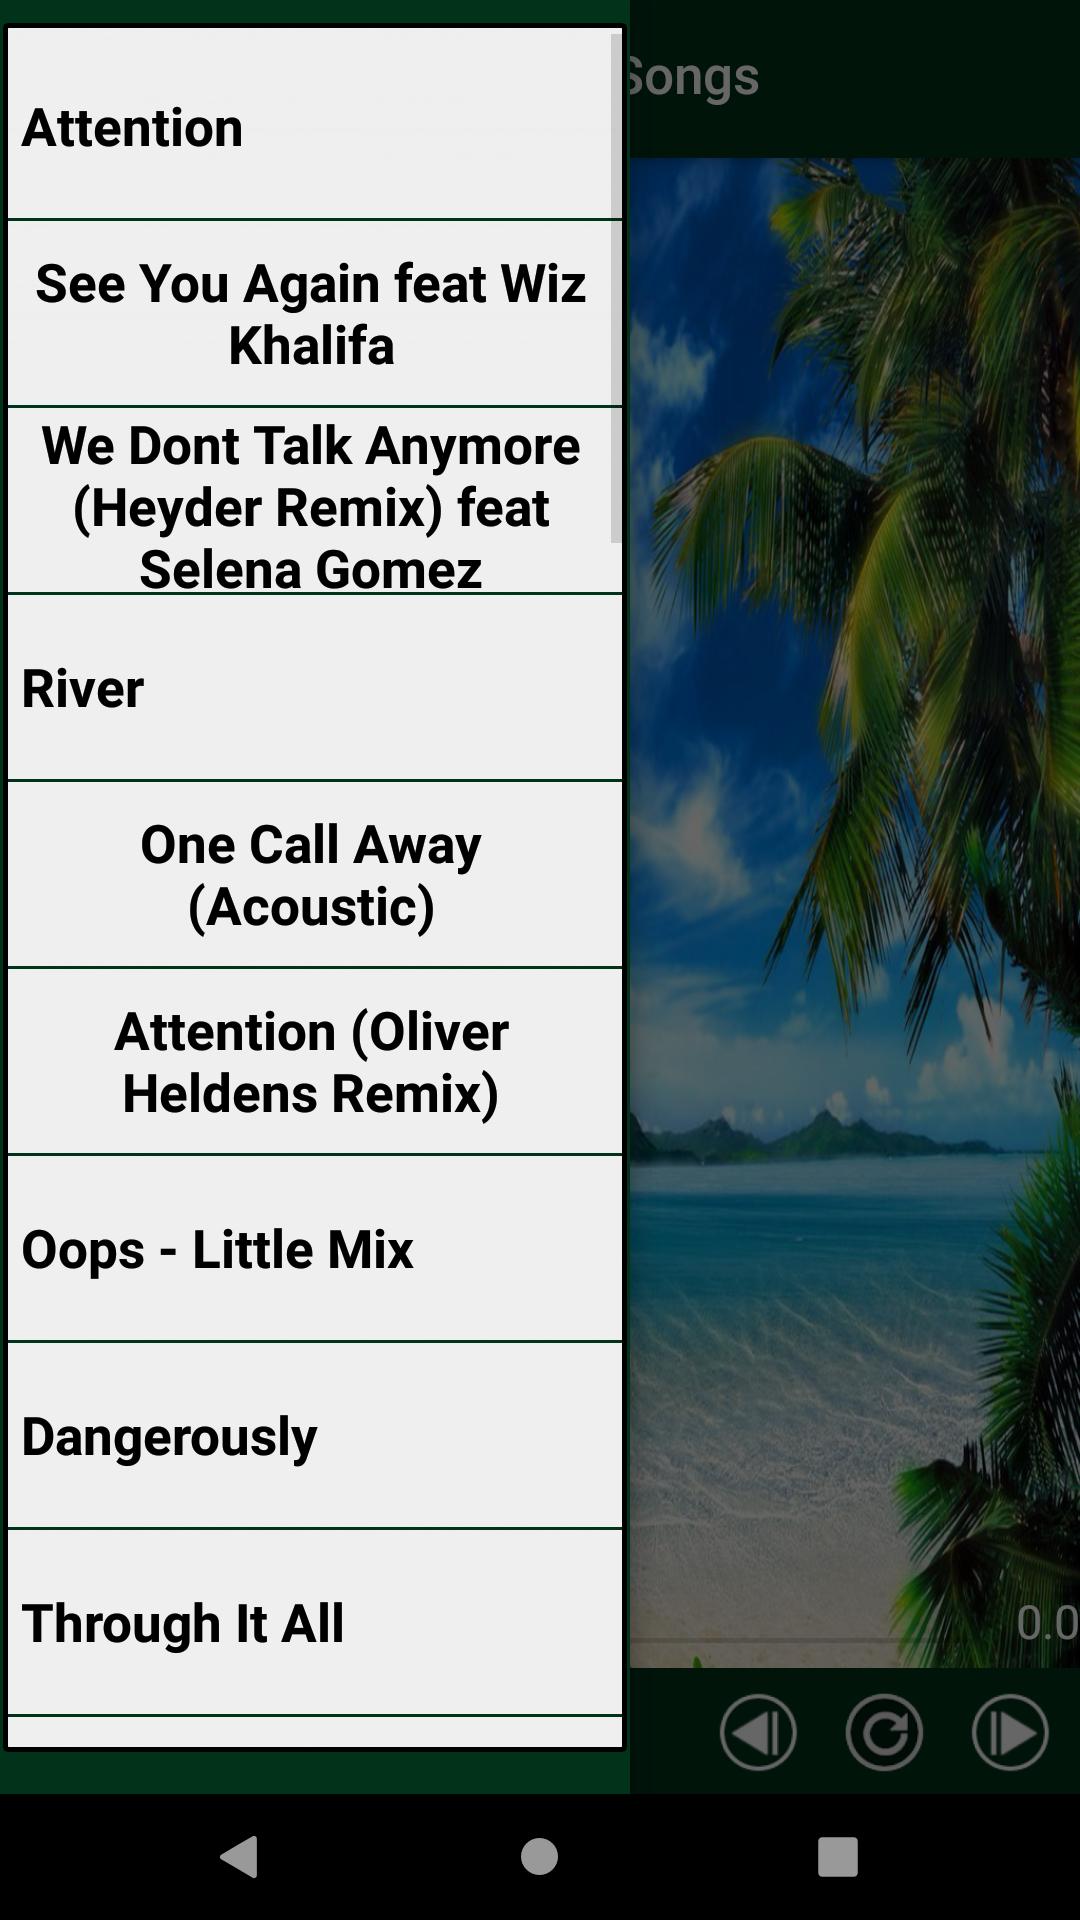 تشارلي بوث أفضل الأغاني حاليا 2020 نغمات For Android Apk Download